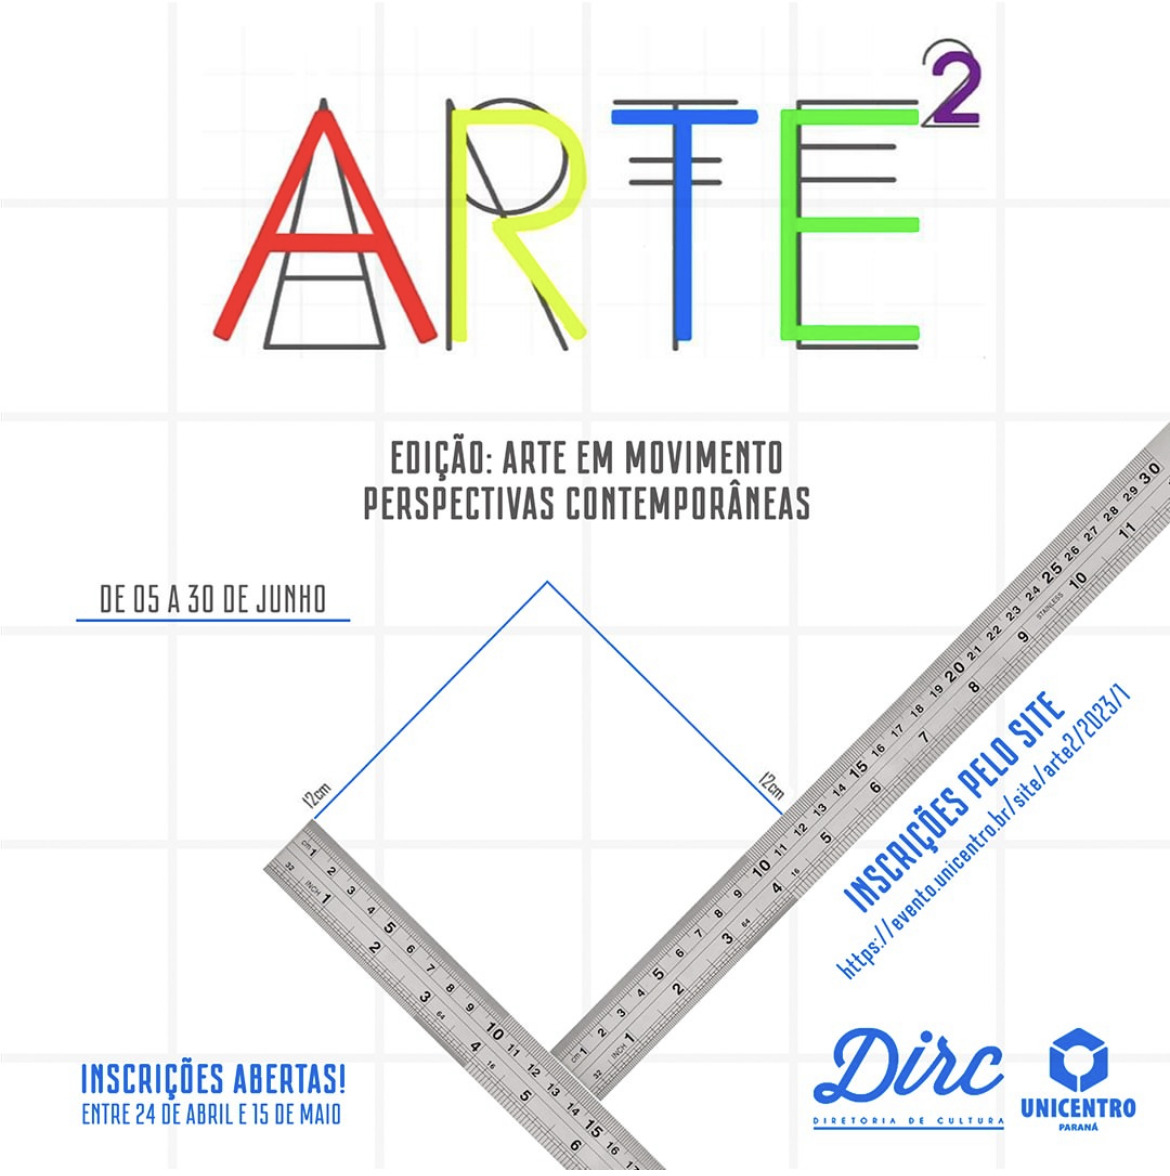 Unicentro recebe inscrições de artistas interessados em expor na mostra coletiva Arte²